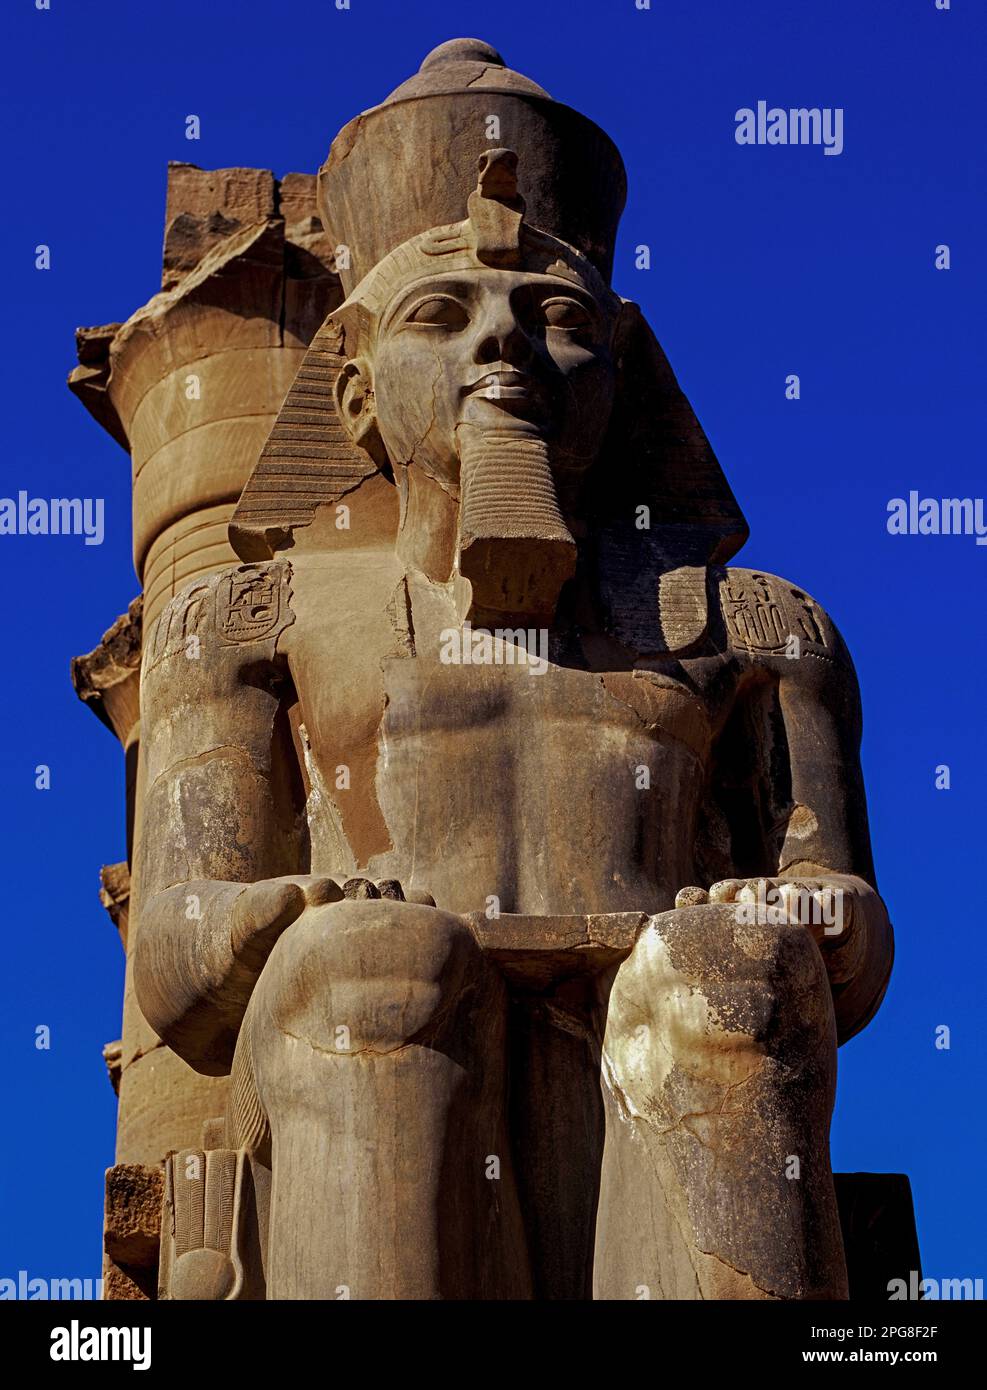 Ozymandias, Re dei Re: Statua seduta del “Grande antenato” egiziano, il lungo regno nuovo 19th dinastia Faraone Ramesses II (regnò 1279-1213 a.C.), all'ingresso del peristilio o corte colonnata del Tempio di Luxor tra le rovine dell'antica capitale di Tebe, sulla riva orientale del Nilo. Foto Stock